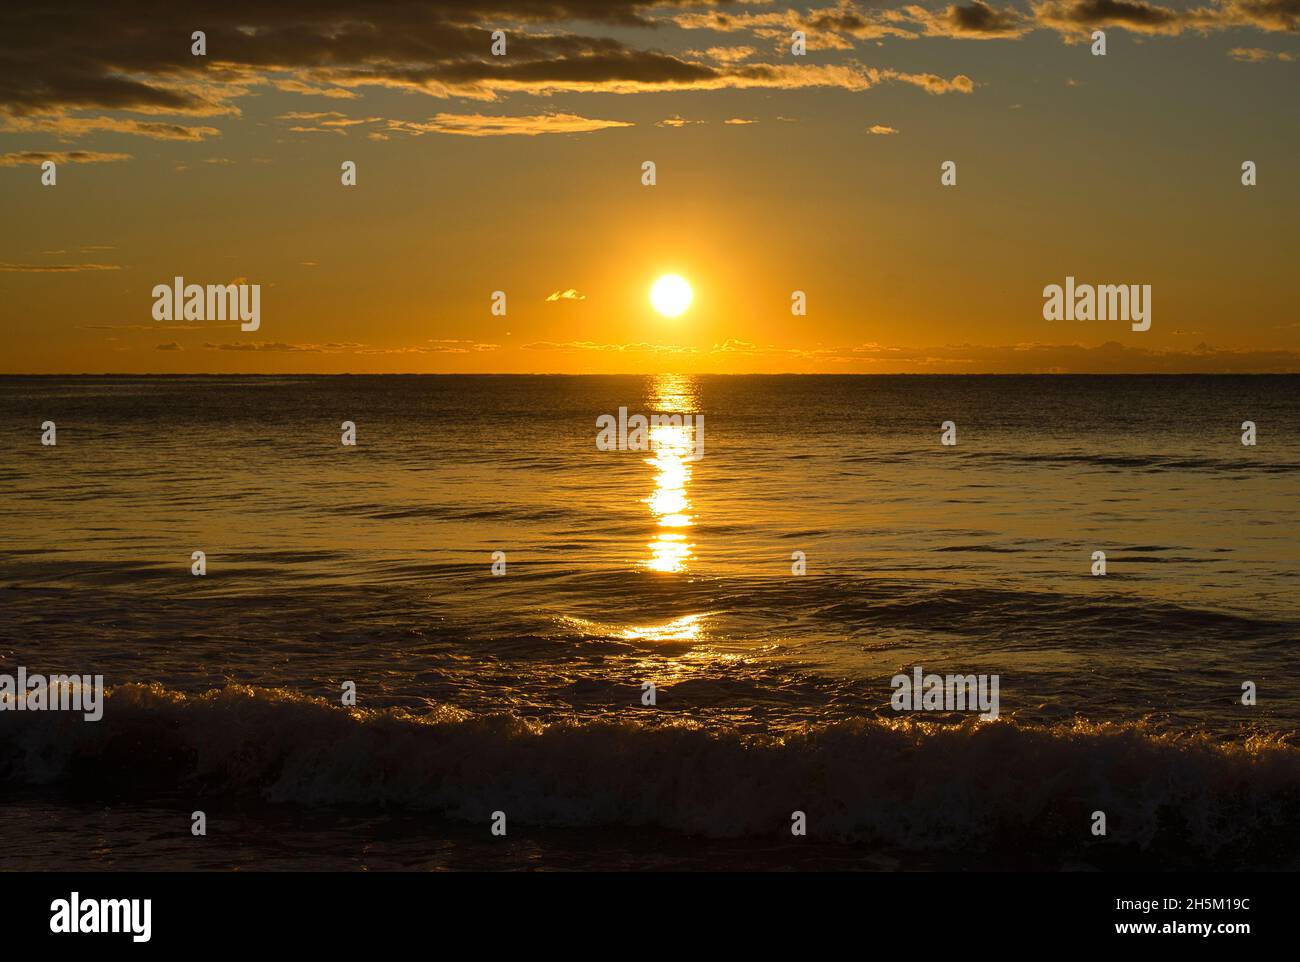 A peaceful sunrise on the beach of the Costa Azahar, Spain Stock Photo